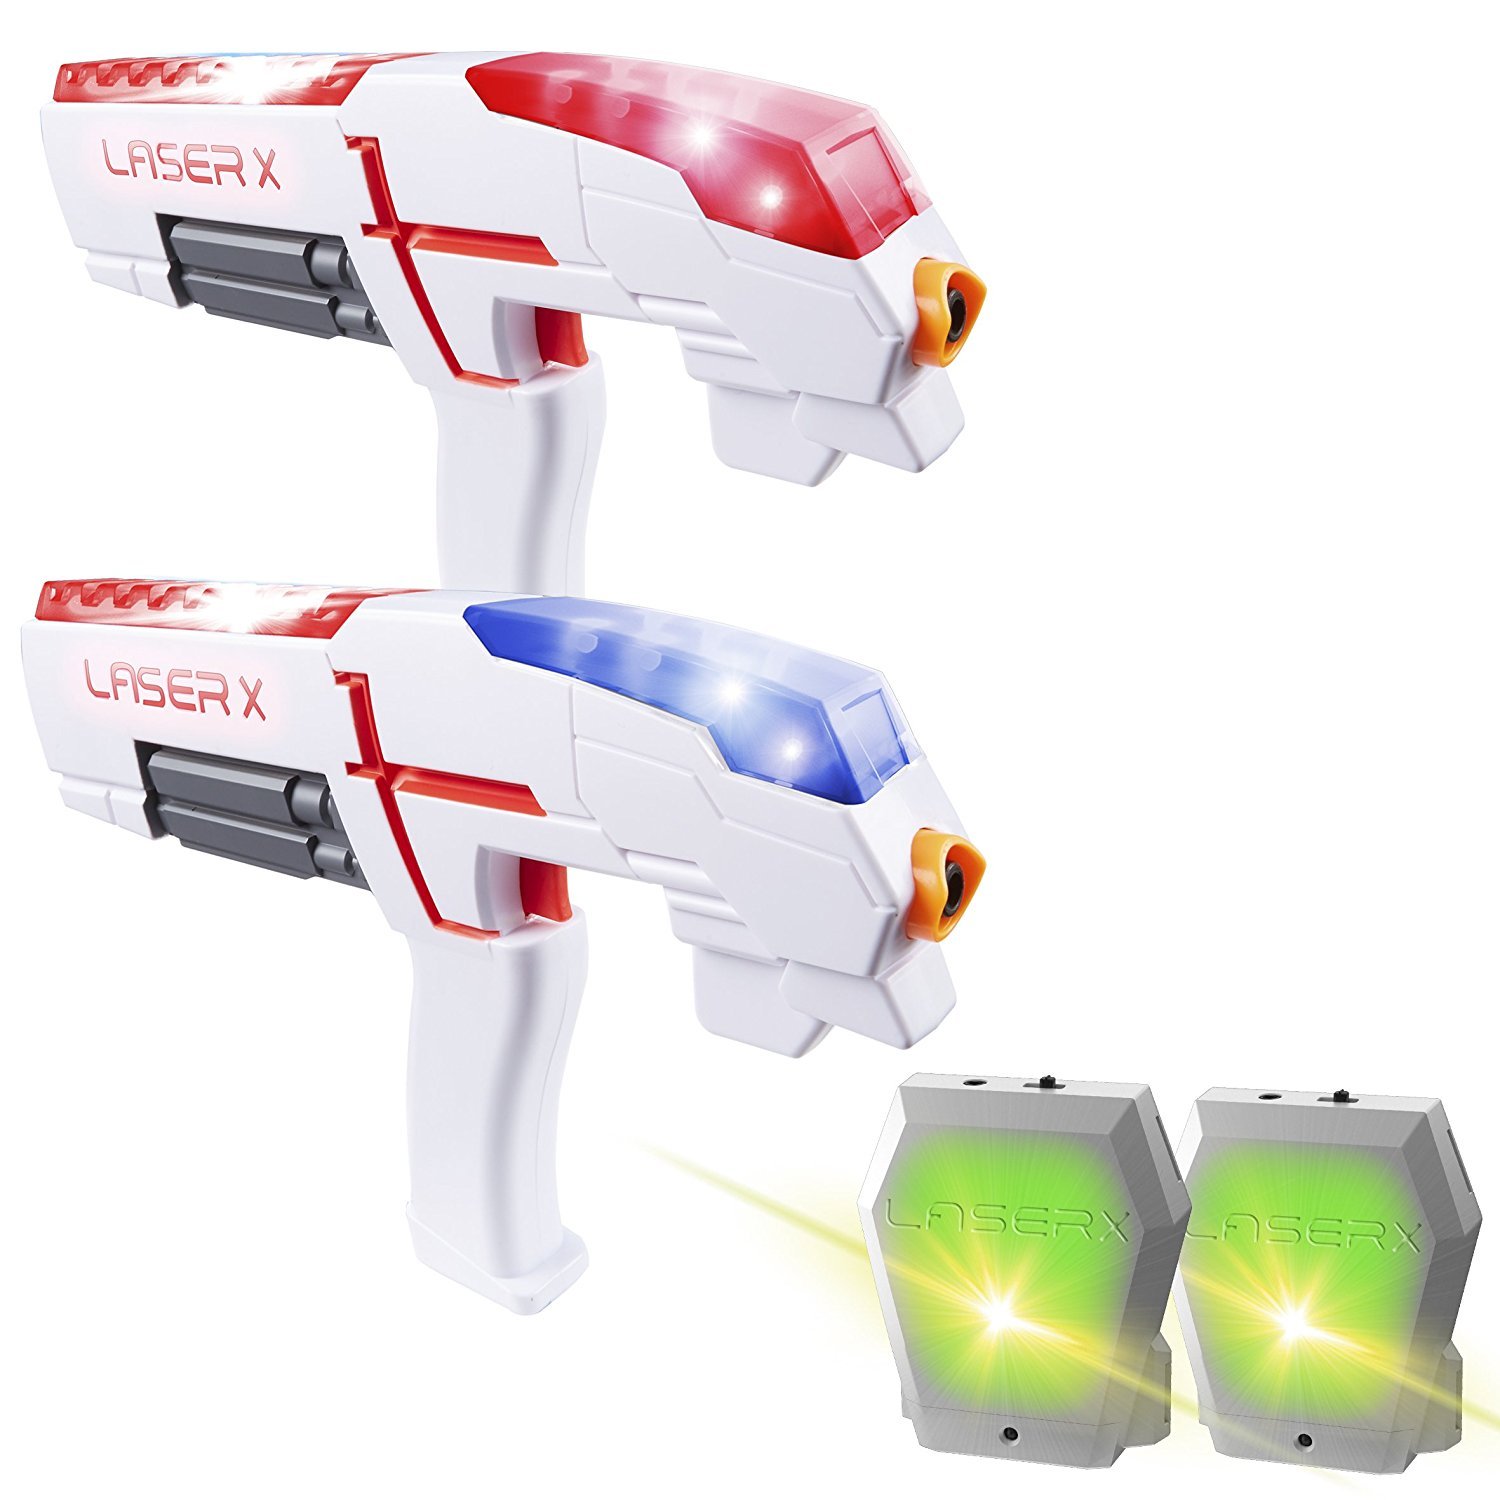 Laser X 2 spillere